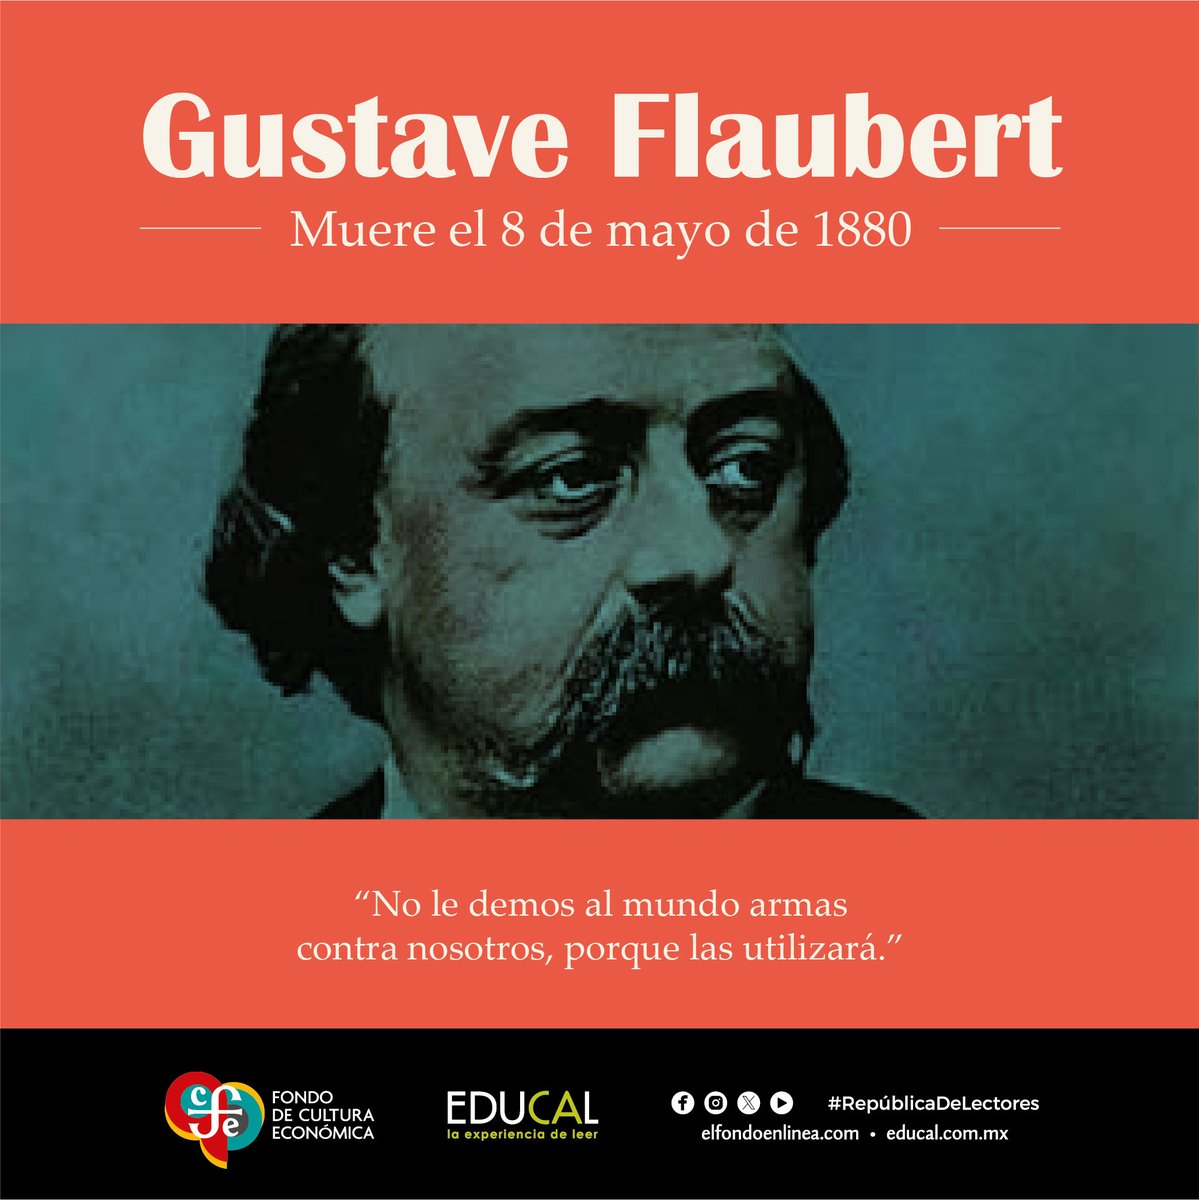 Un día como hoy de 1880 muere #GustaveFlaubert, escritor francés, considerado como uno de los mejores novelistas de la literatura universal. #RepúblicaDeLectores #LeerTransforma